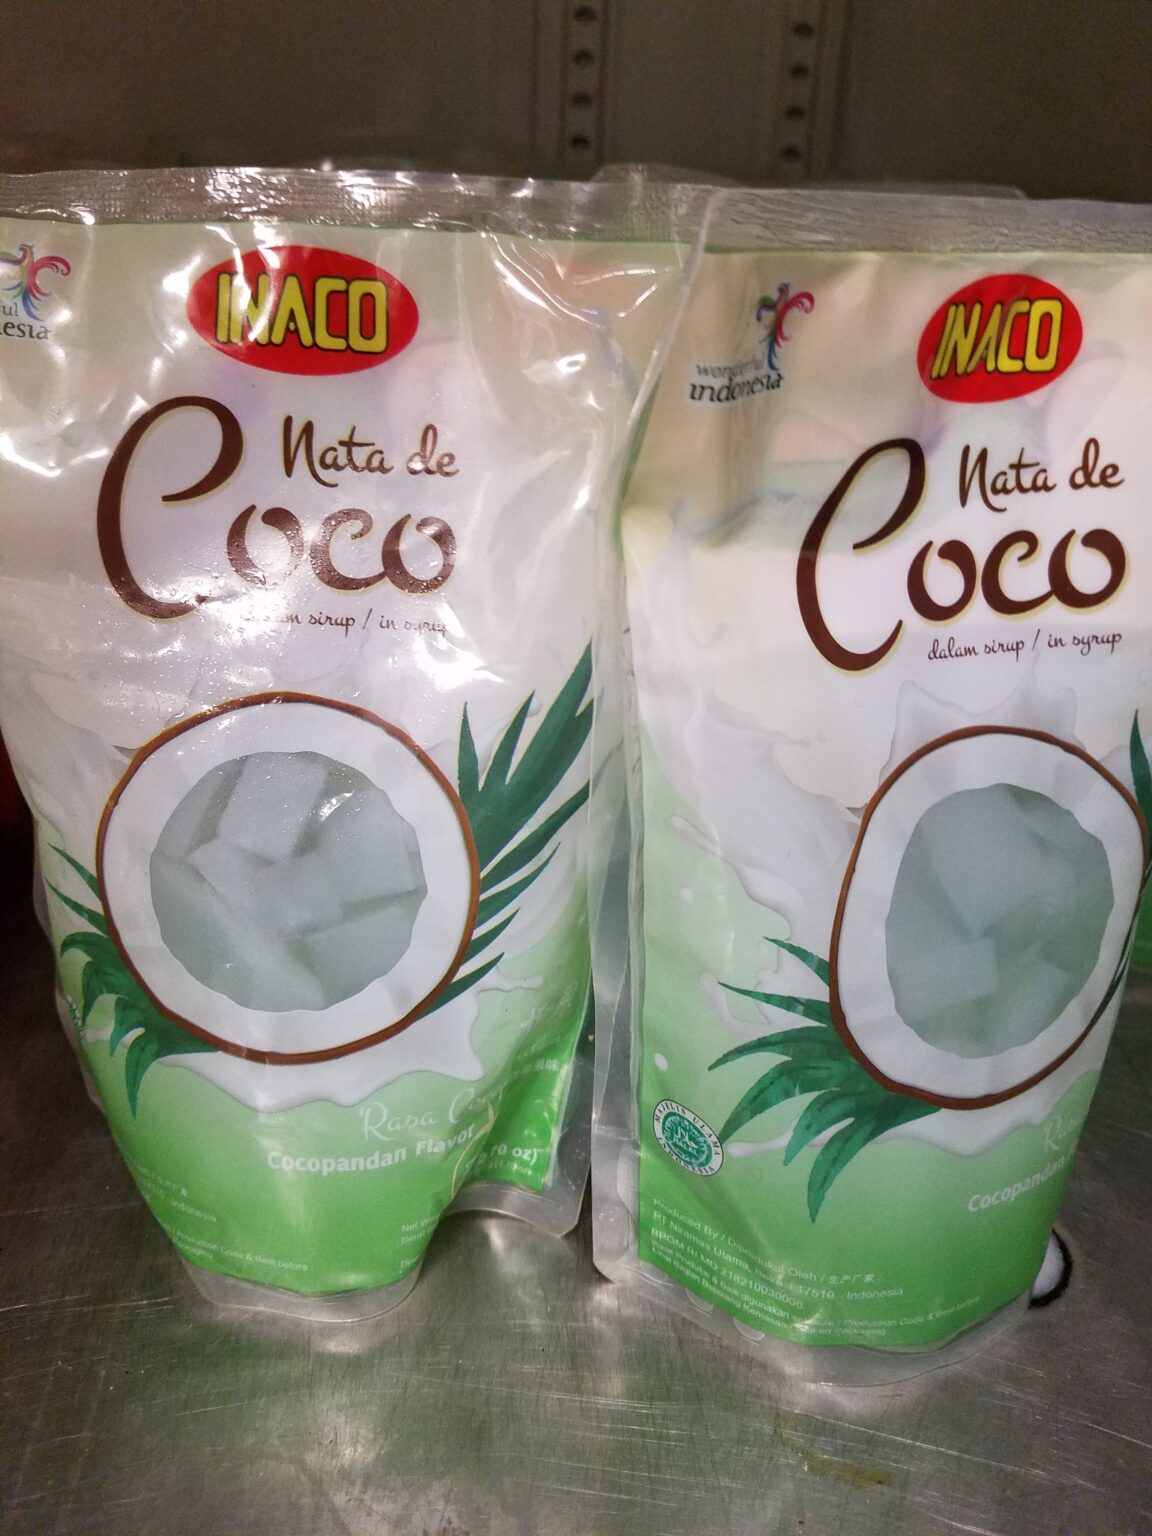 INACO Nata de coco Cocopandan 12.7oz – Cafe Pendawa